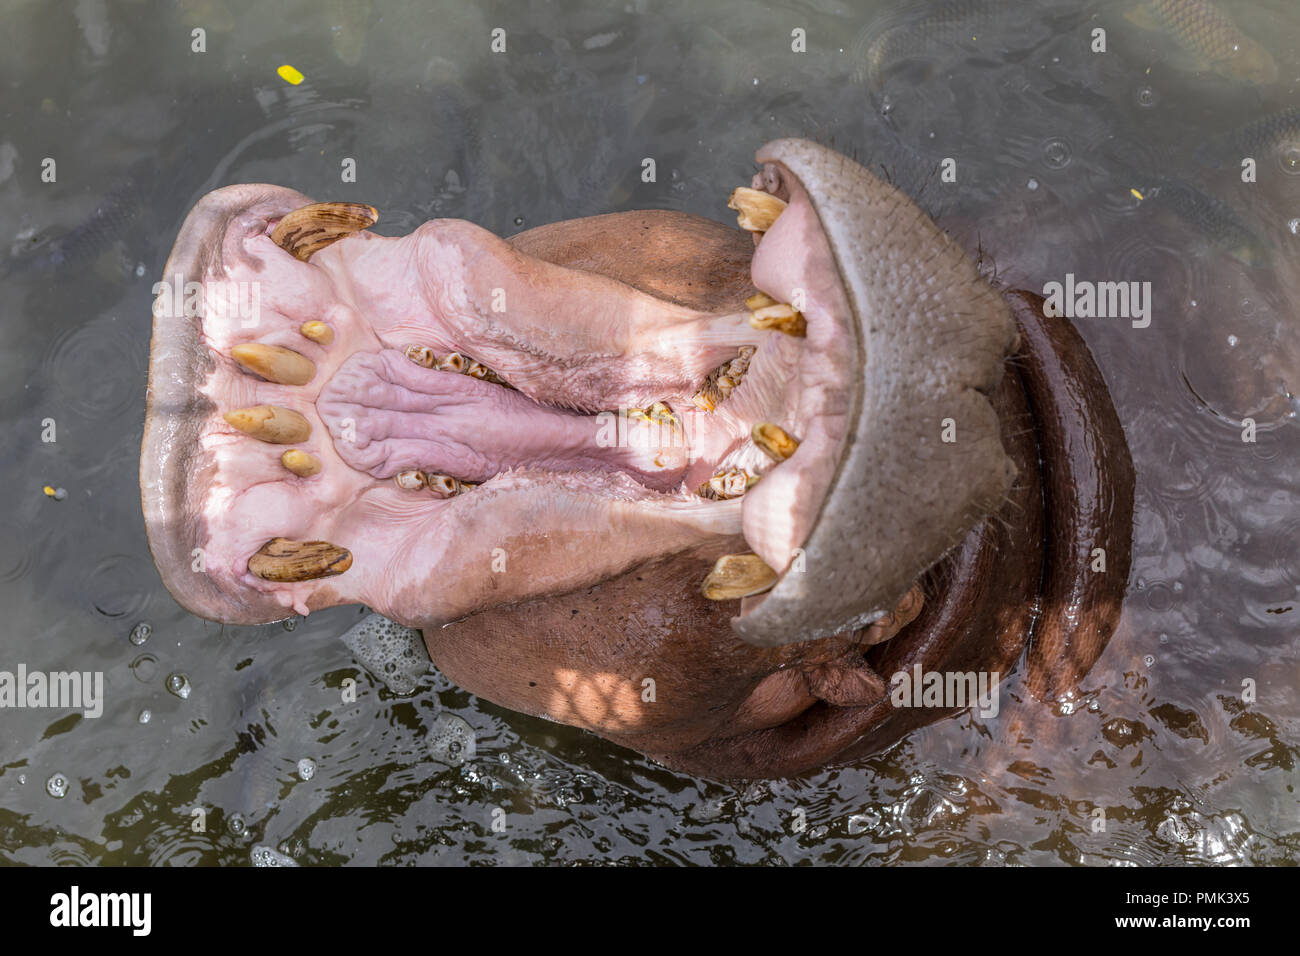 Vue de dessus d'Hippopotame (Hippopotamus amphibius) ou d'Hippone, bouche ouverte pour l'alimentation des mâchoires Banque D'Images